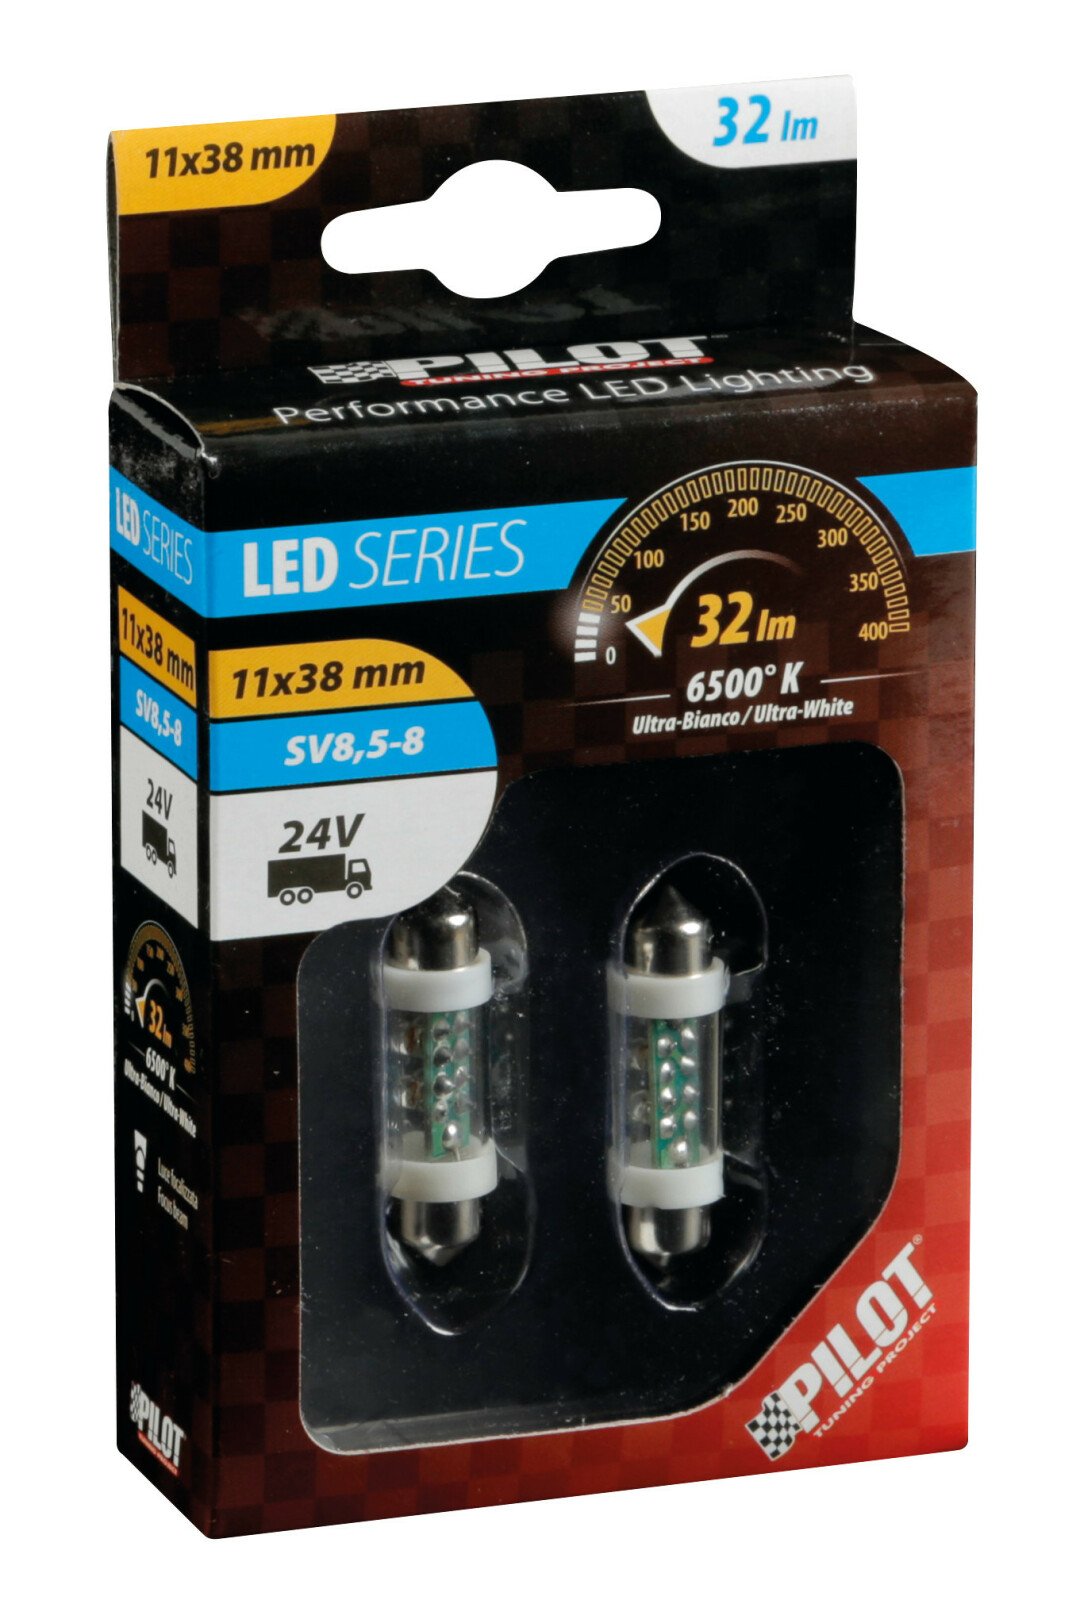 24V Festoon lamp 4 Led - 11x38 mm - SV8,5-8 - 2 pcs - White thumb